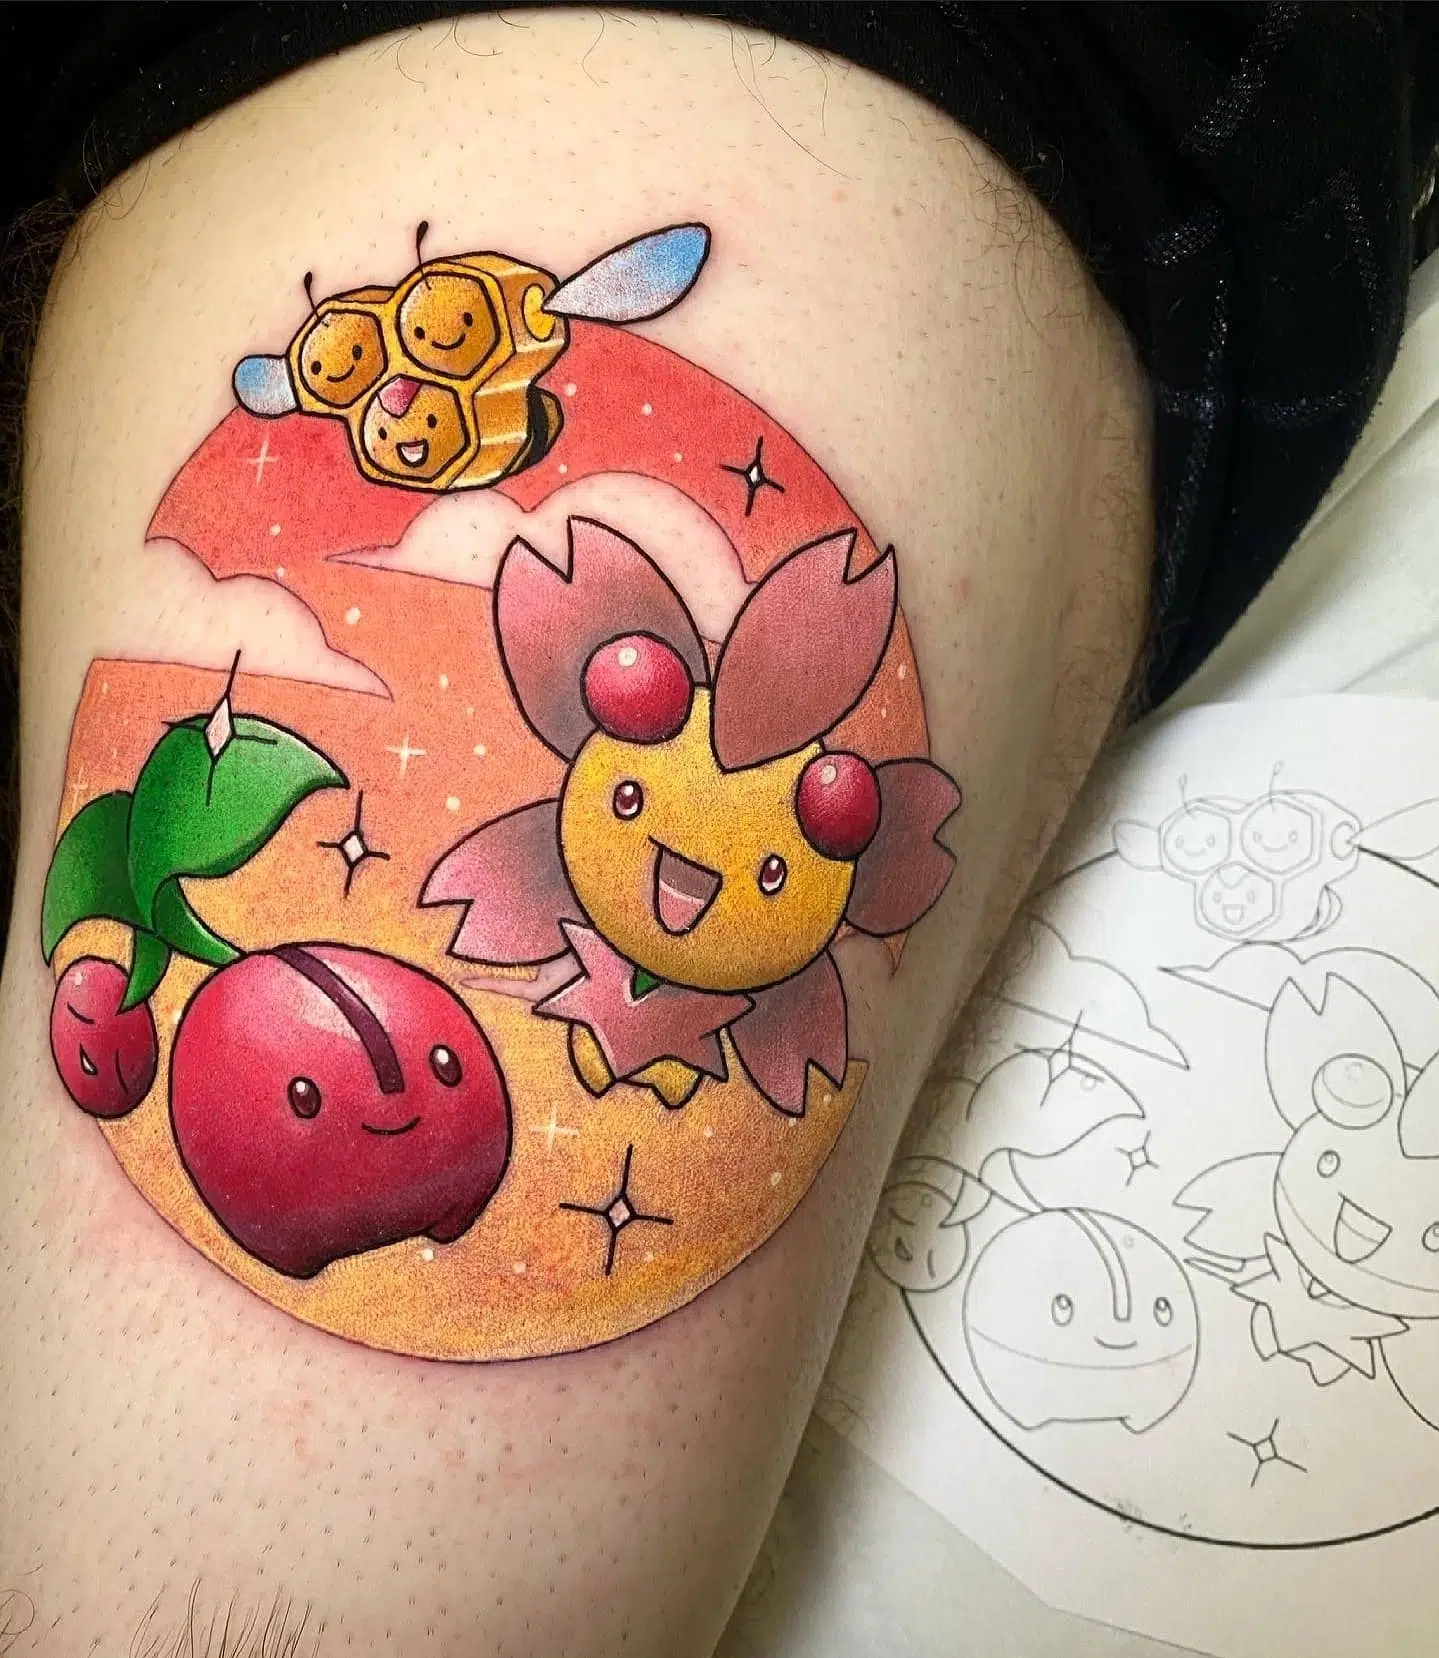 Cherubi, Combee and Cherrim!!!! 
Pokemon cuteness by Noemi!

noemi_tattoo                      